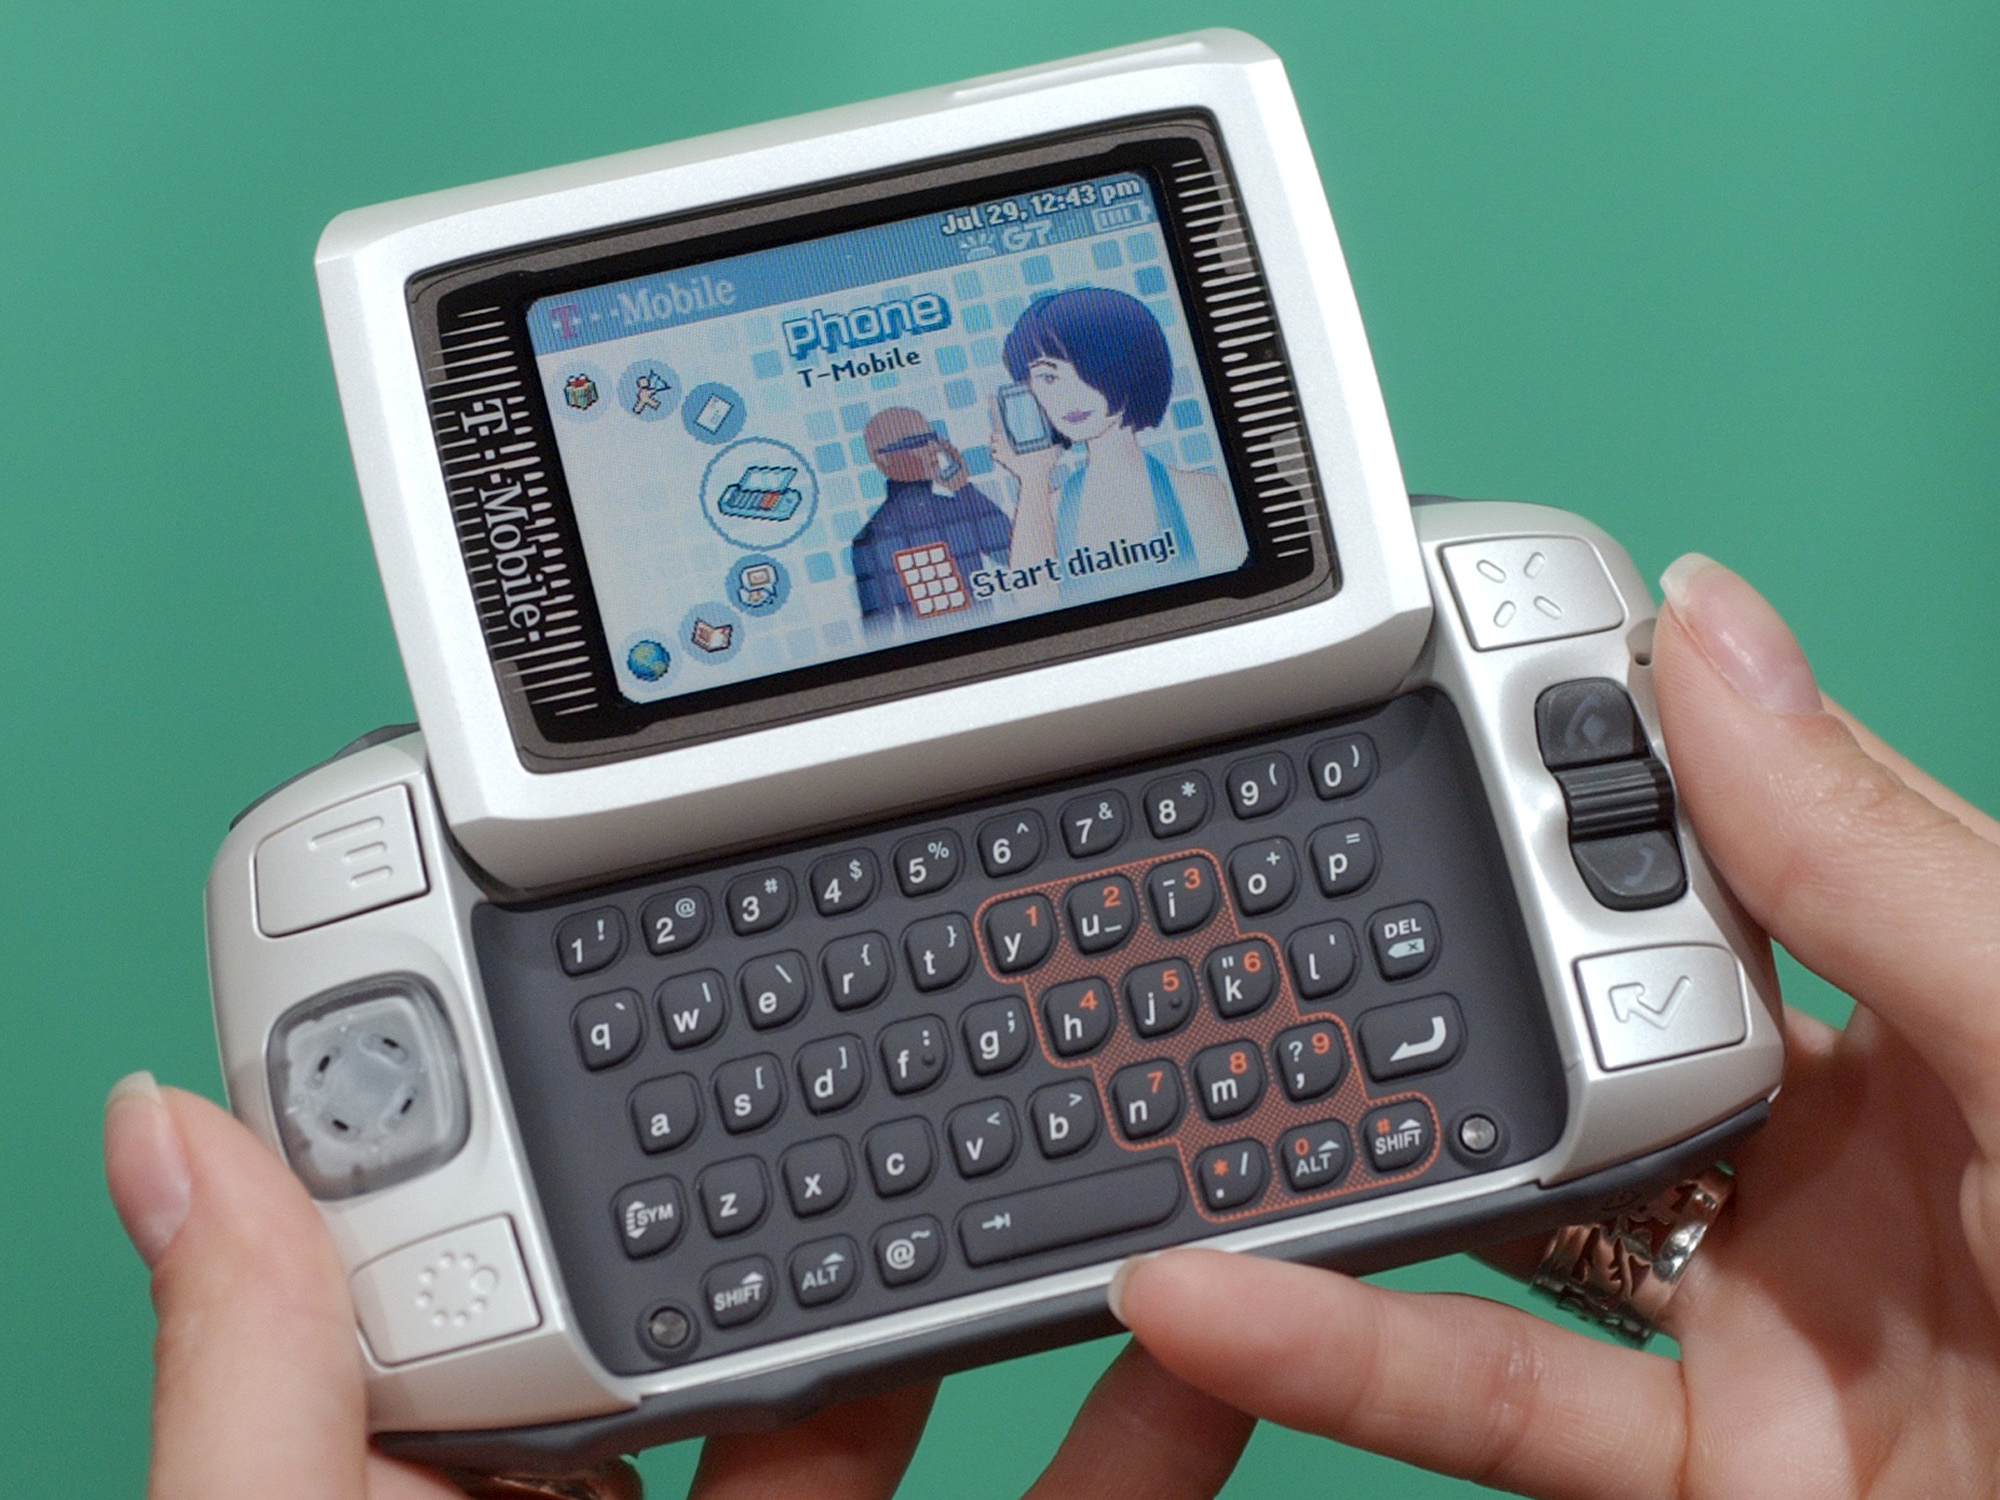 Voor de komst van de iPhone in 2007 was de Sidekick een van de populairste smartphones.